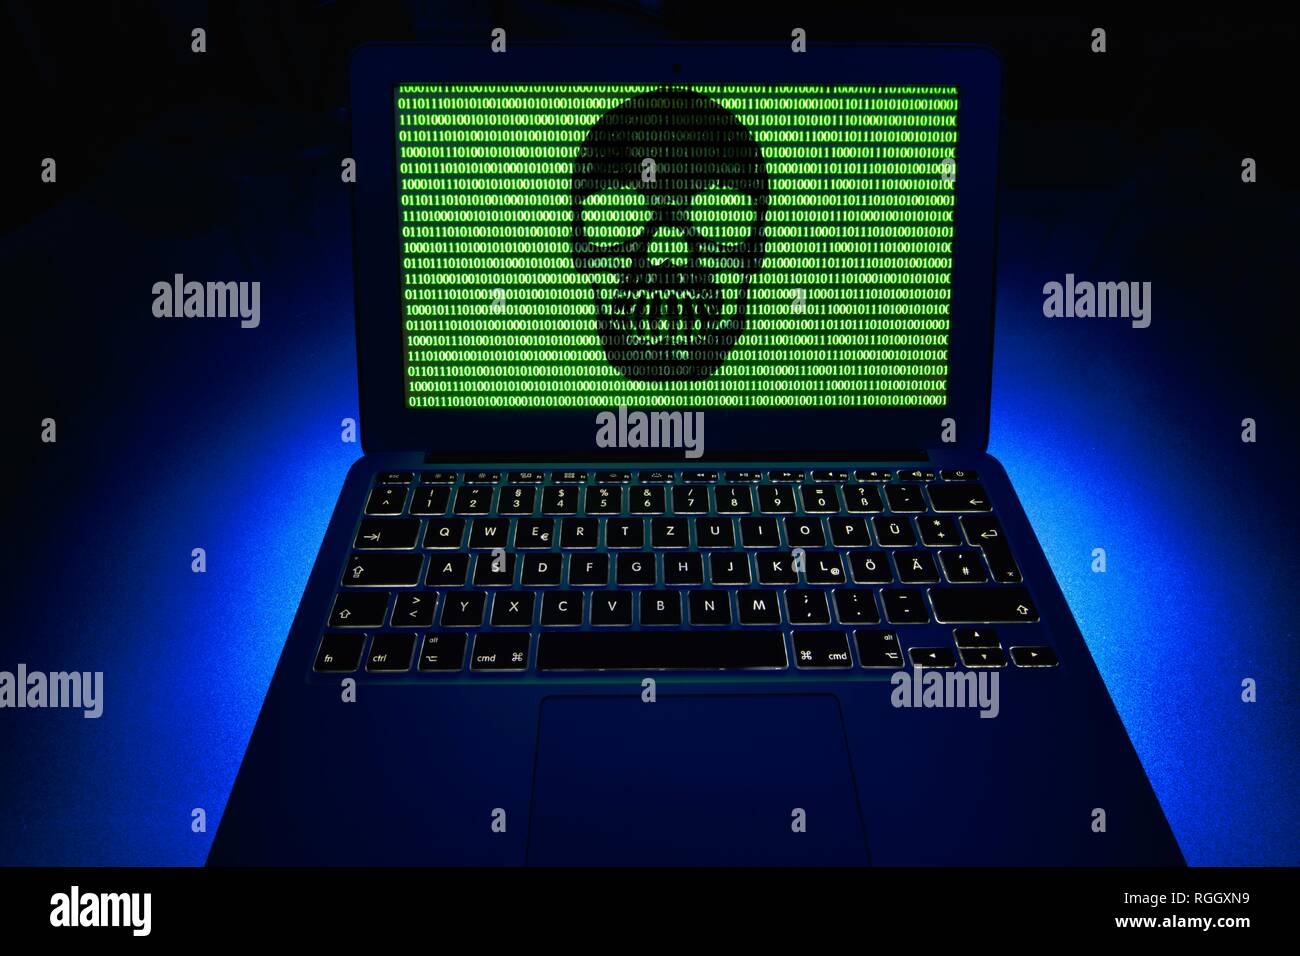 Portátil con Calavera y huesos cruzados y números binarios en la pantalla, el símbolo de la imagen de alarma de malware, virus, delitos informáticos Foto de stock